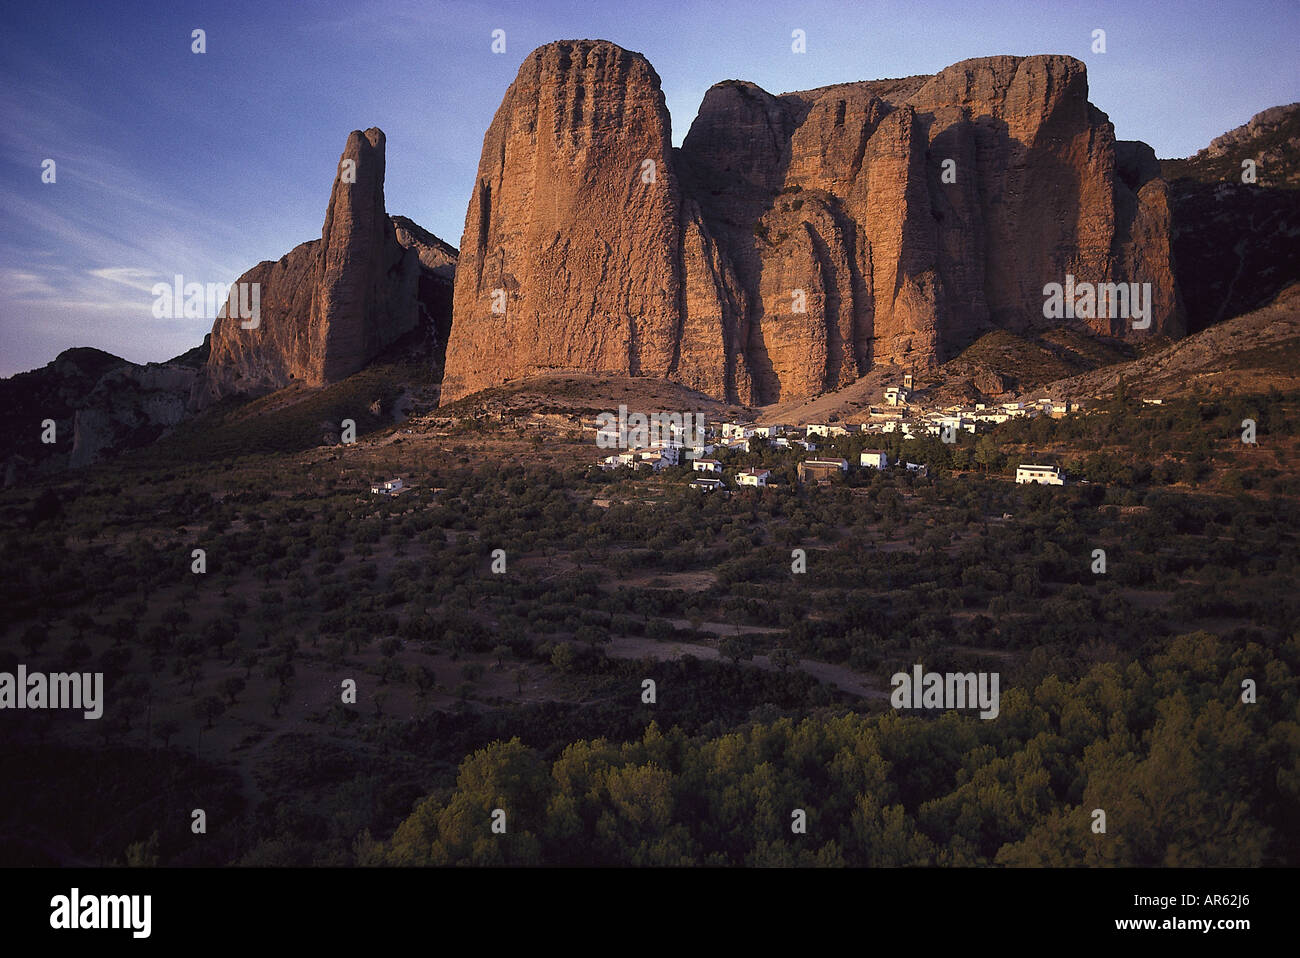 Los Mallos de Riglos, Rock formation, Village of Riglos, Pyrenees, Province of Huesca, Aragon, Spain Stock Photo